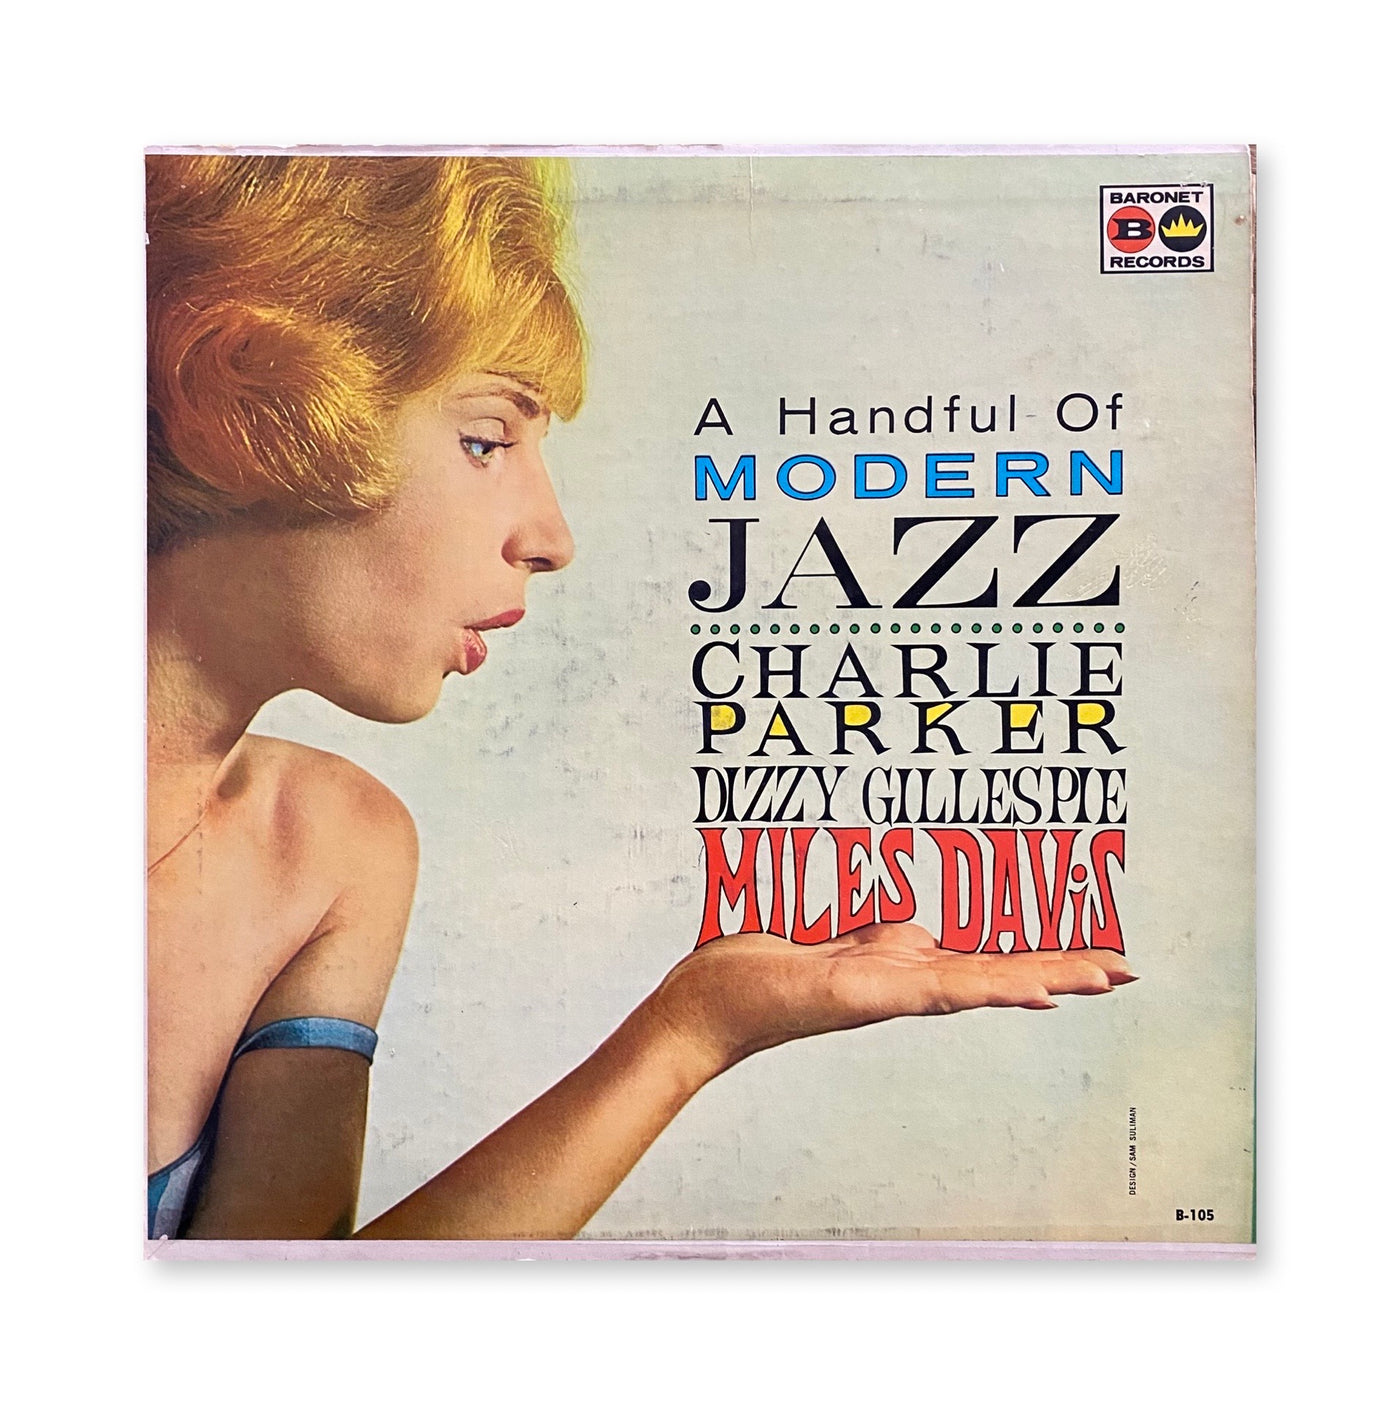 Charlie Parker, Dizzy Gillespie, Miles Davis - A Handful Of Modern Jazz